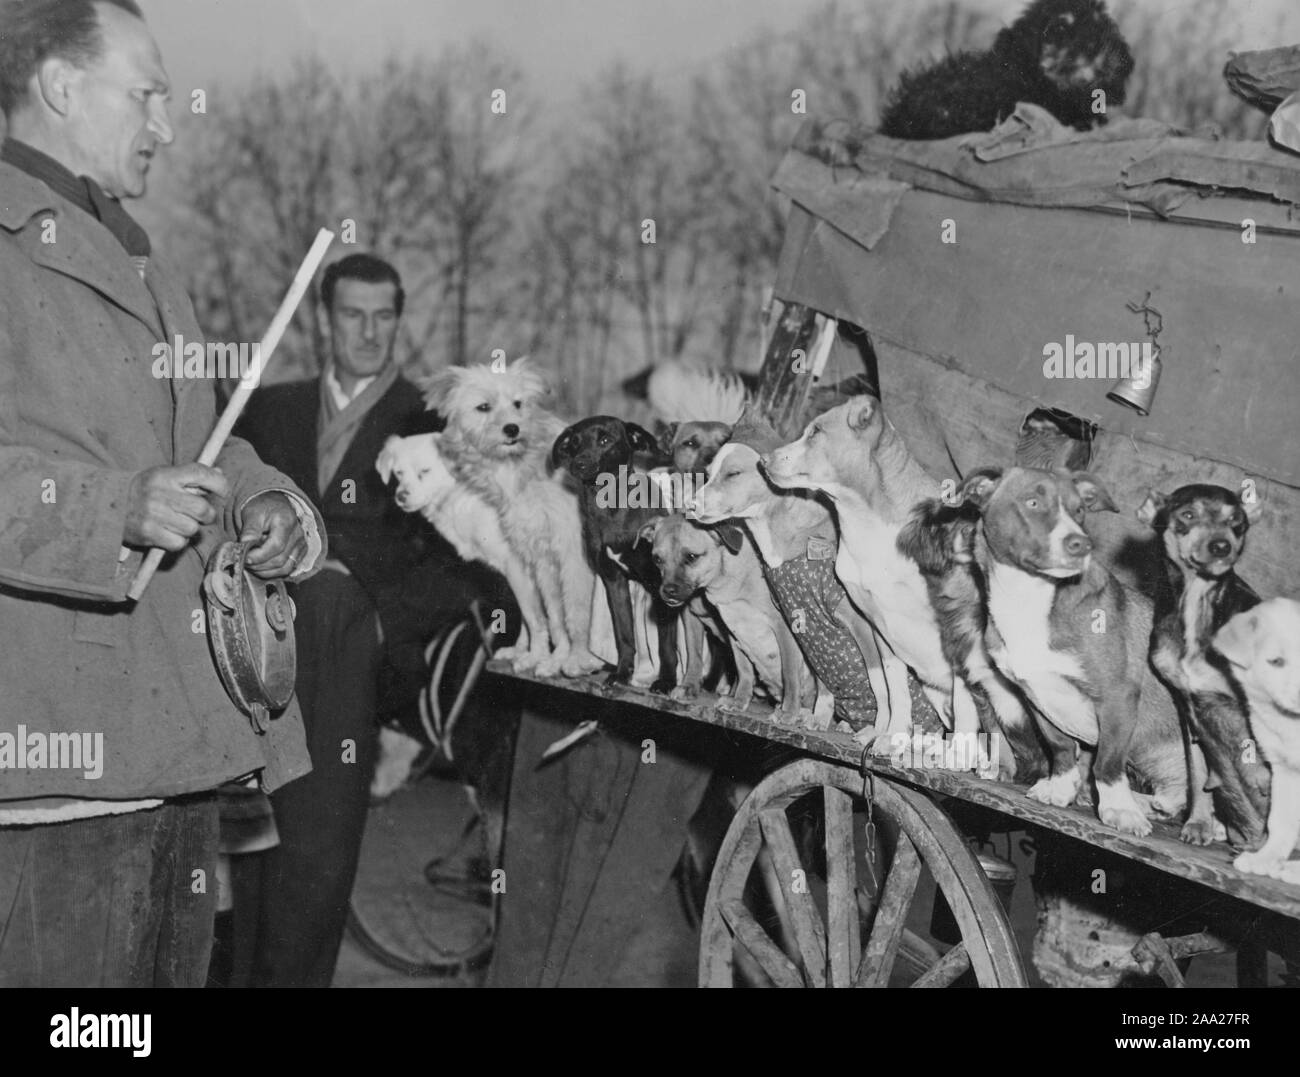 Entraîneur de chien avec ses chiens. L'italien Rodolfo était célèbre dresseur de chiens et est photographié ici avec ses douze chiens assis sur une ligne. Rodolfo était auparavant propriétaire d'un cirque, mais pour le moment, 1949 il n'avait que ses chiens à gauche. Rome Italie 1949 Banque D'Images